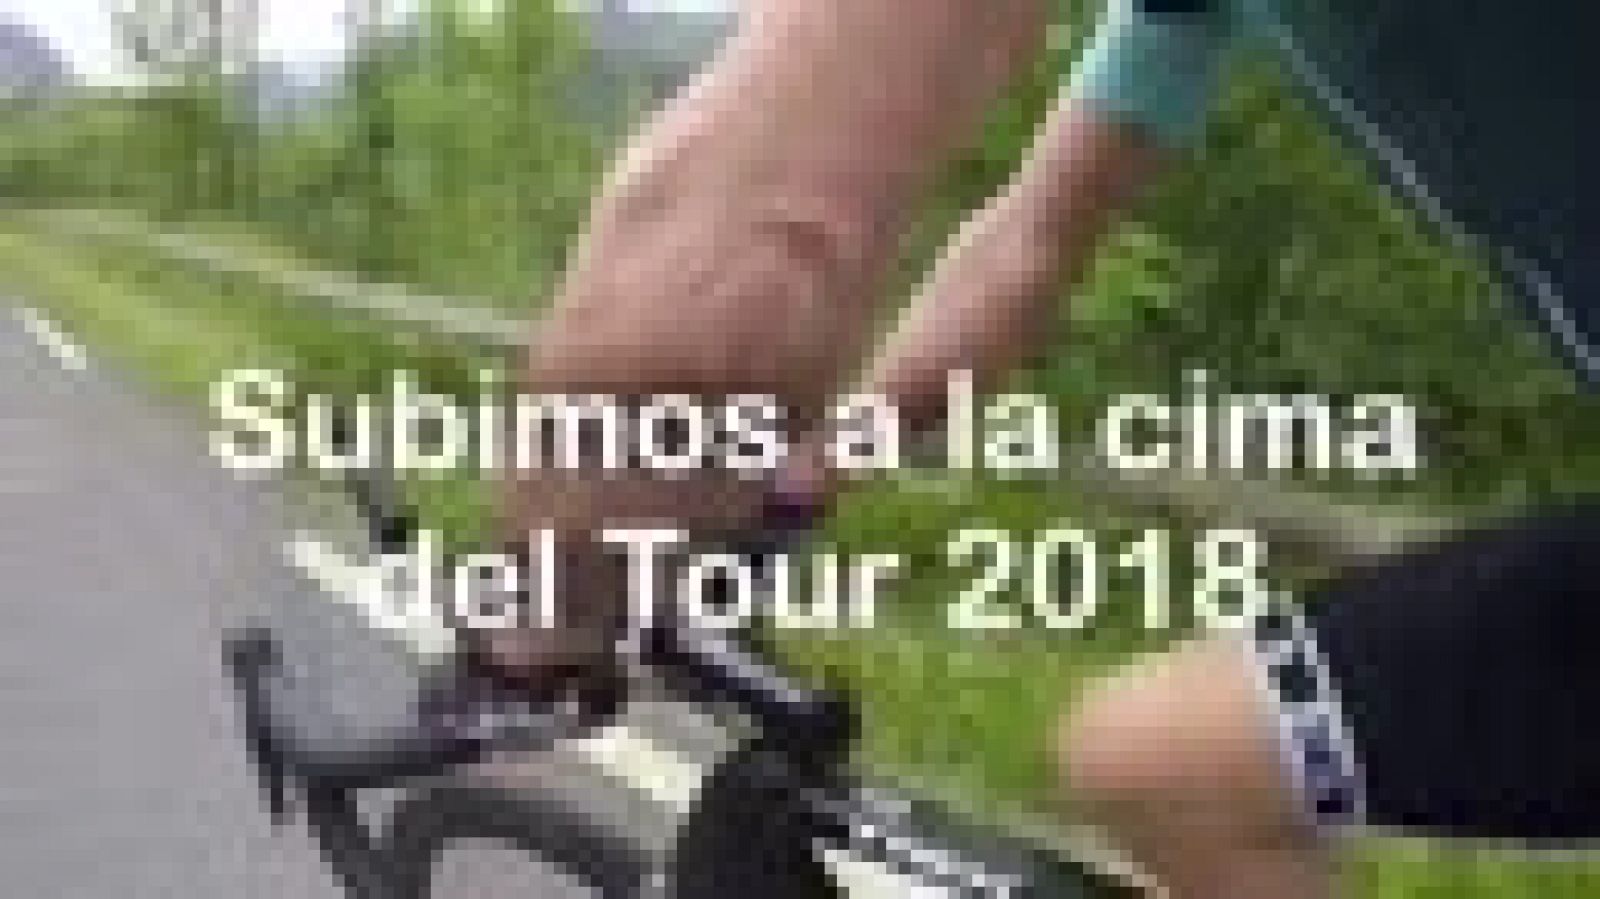 RTVE.es y el exciclista vasco Haimar Zubeldia pedalean juntos el recorrido de la inédita etapa 17 del Tour de Francia 2018. 65 kilómetros de alta montaña entre las localidades francesas de Bagnéres de Luchon y Saint Lary-Soulan con el final en la cim